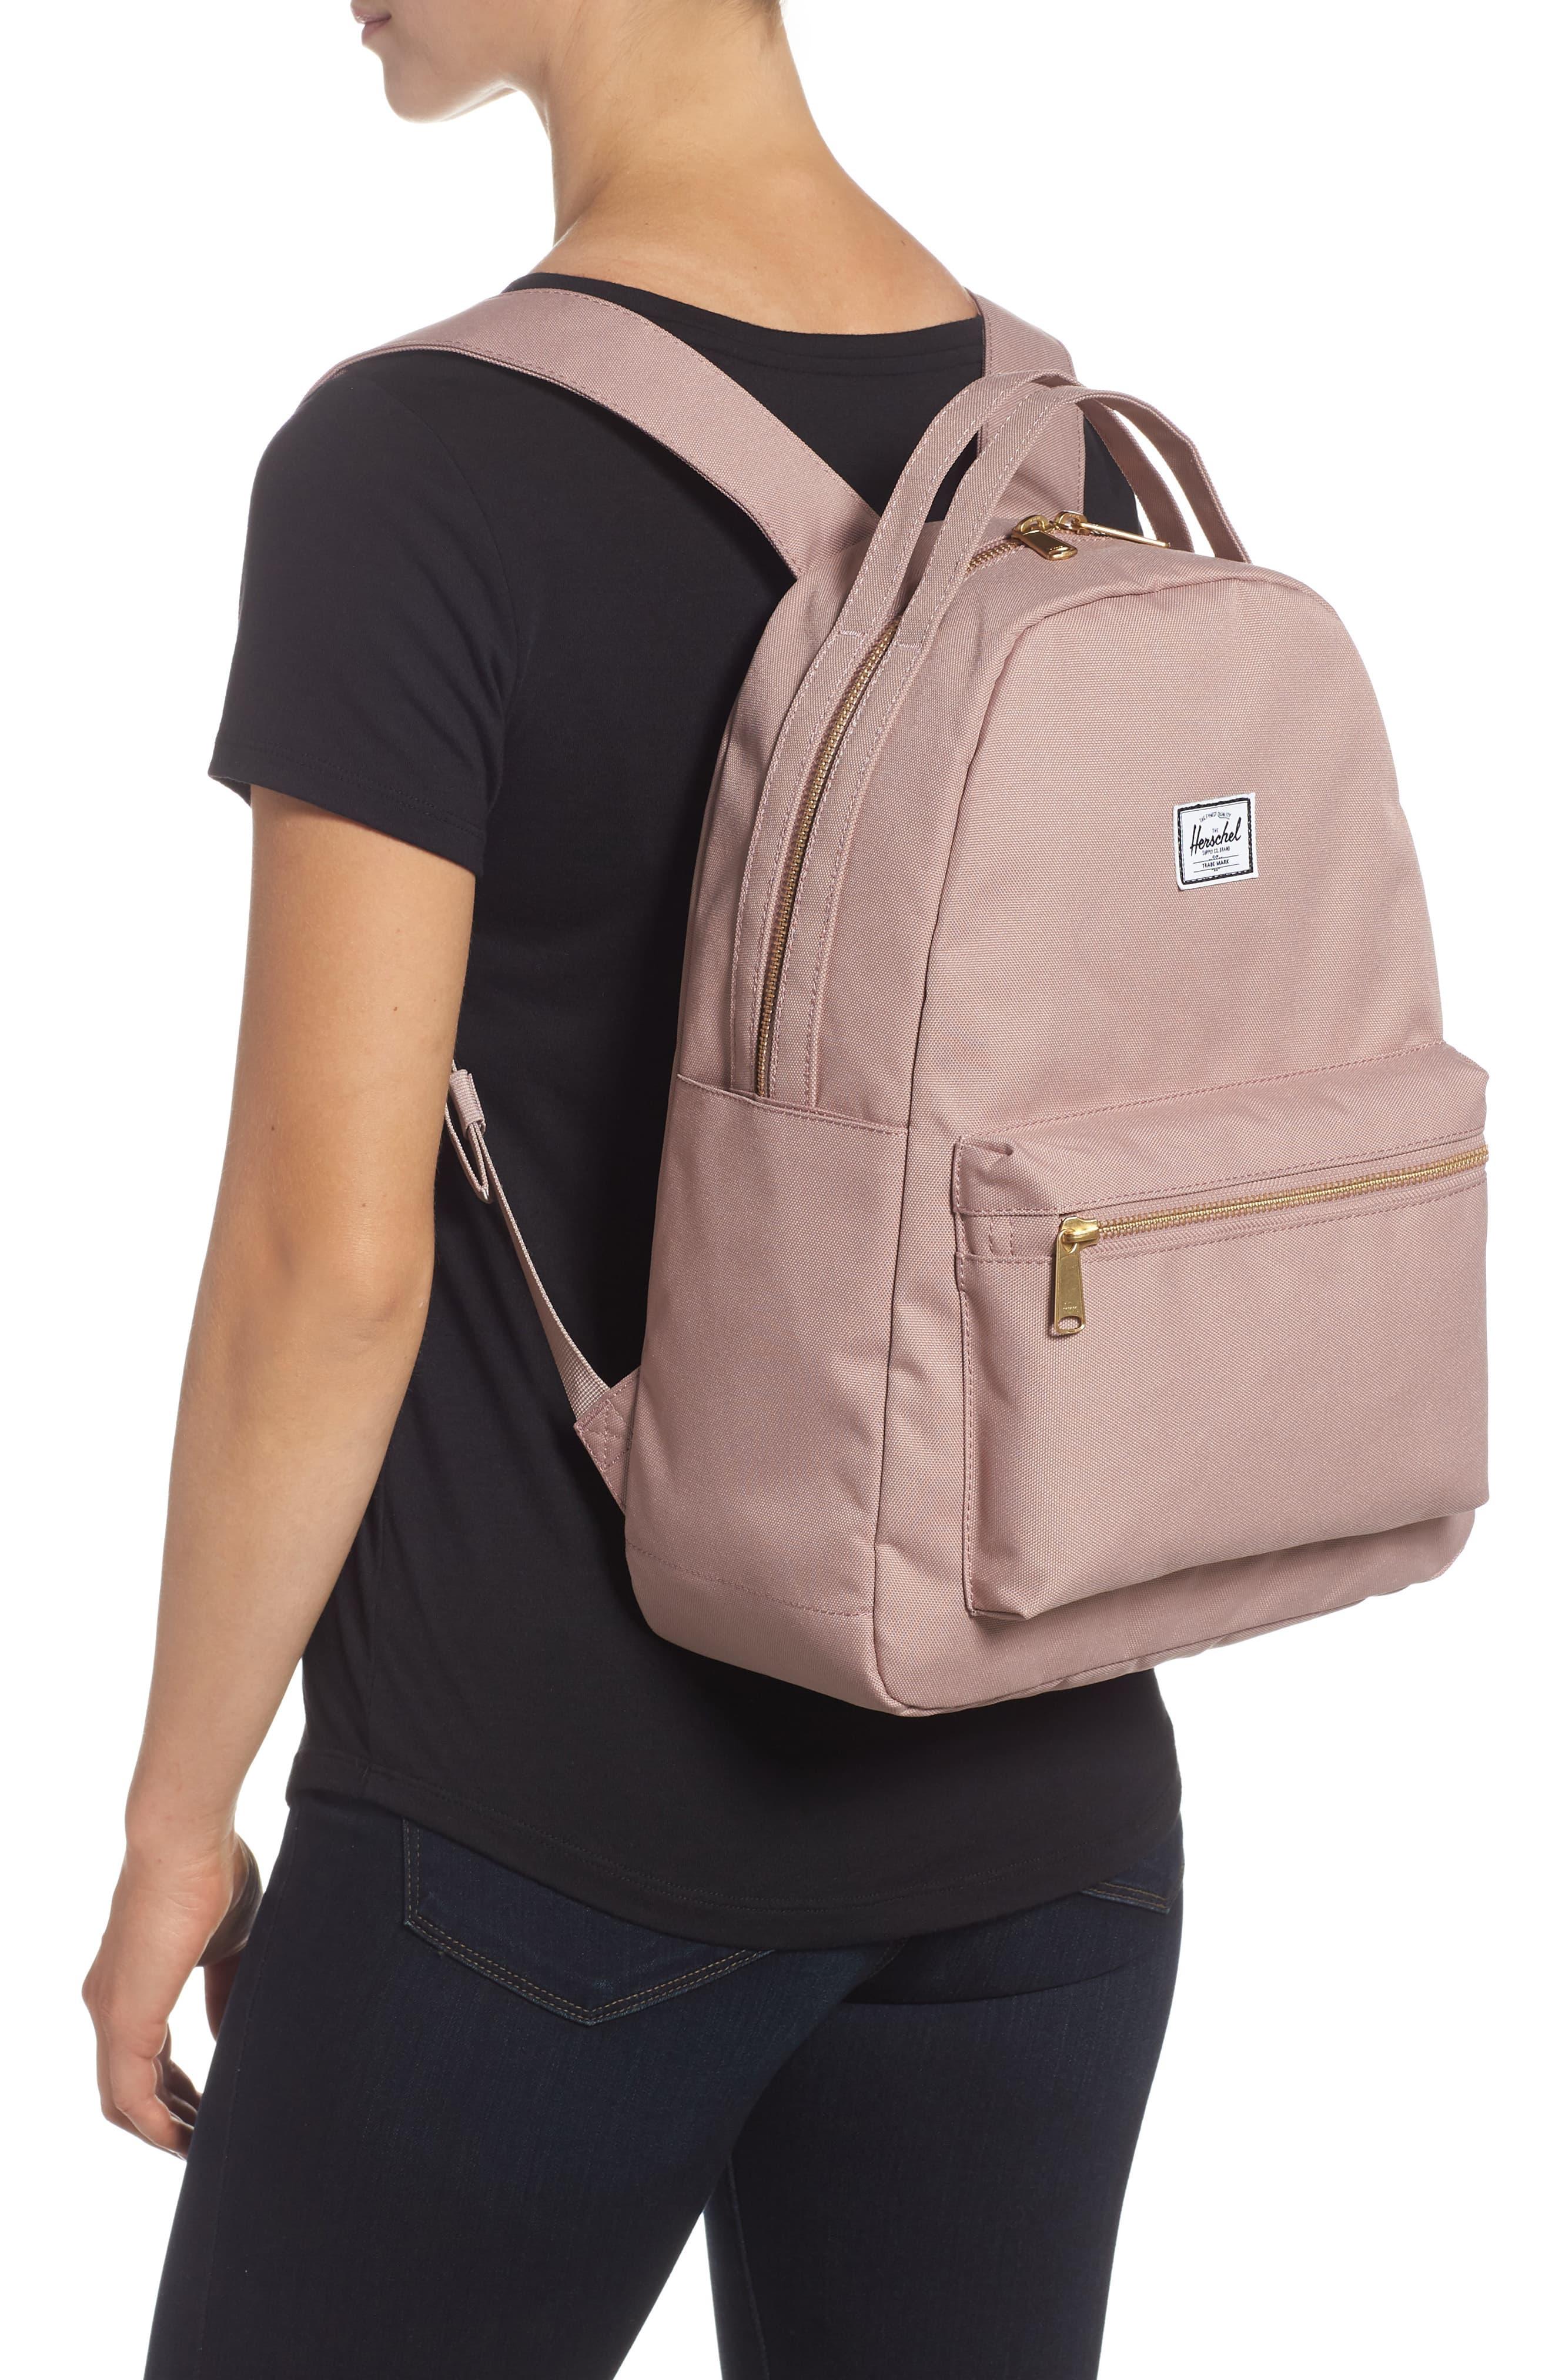 Herschel Supply Co. Nova Mid Volume Backpack in Ash Rose (Pink) - Lyst